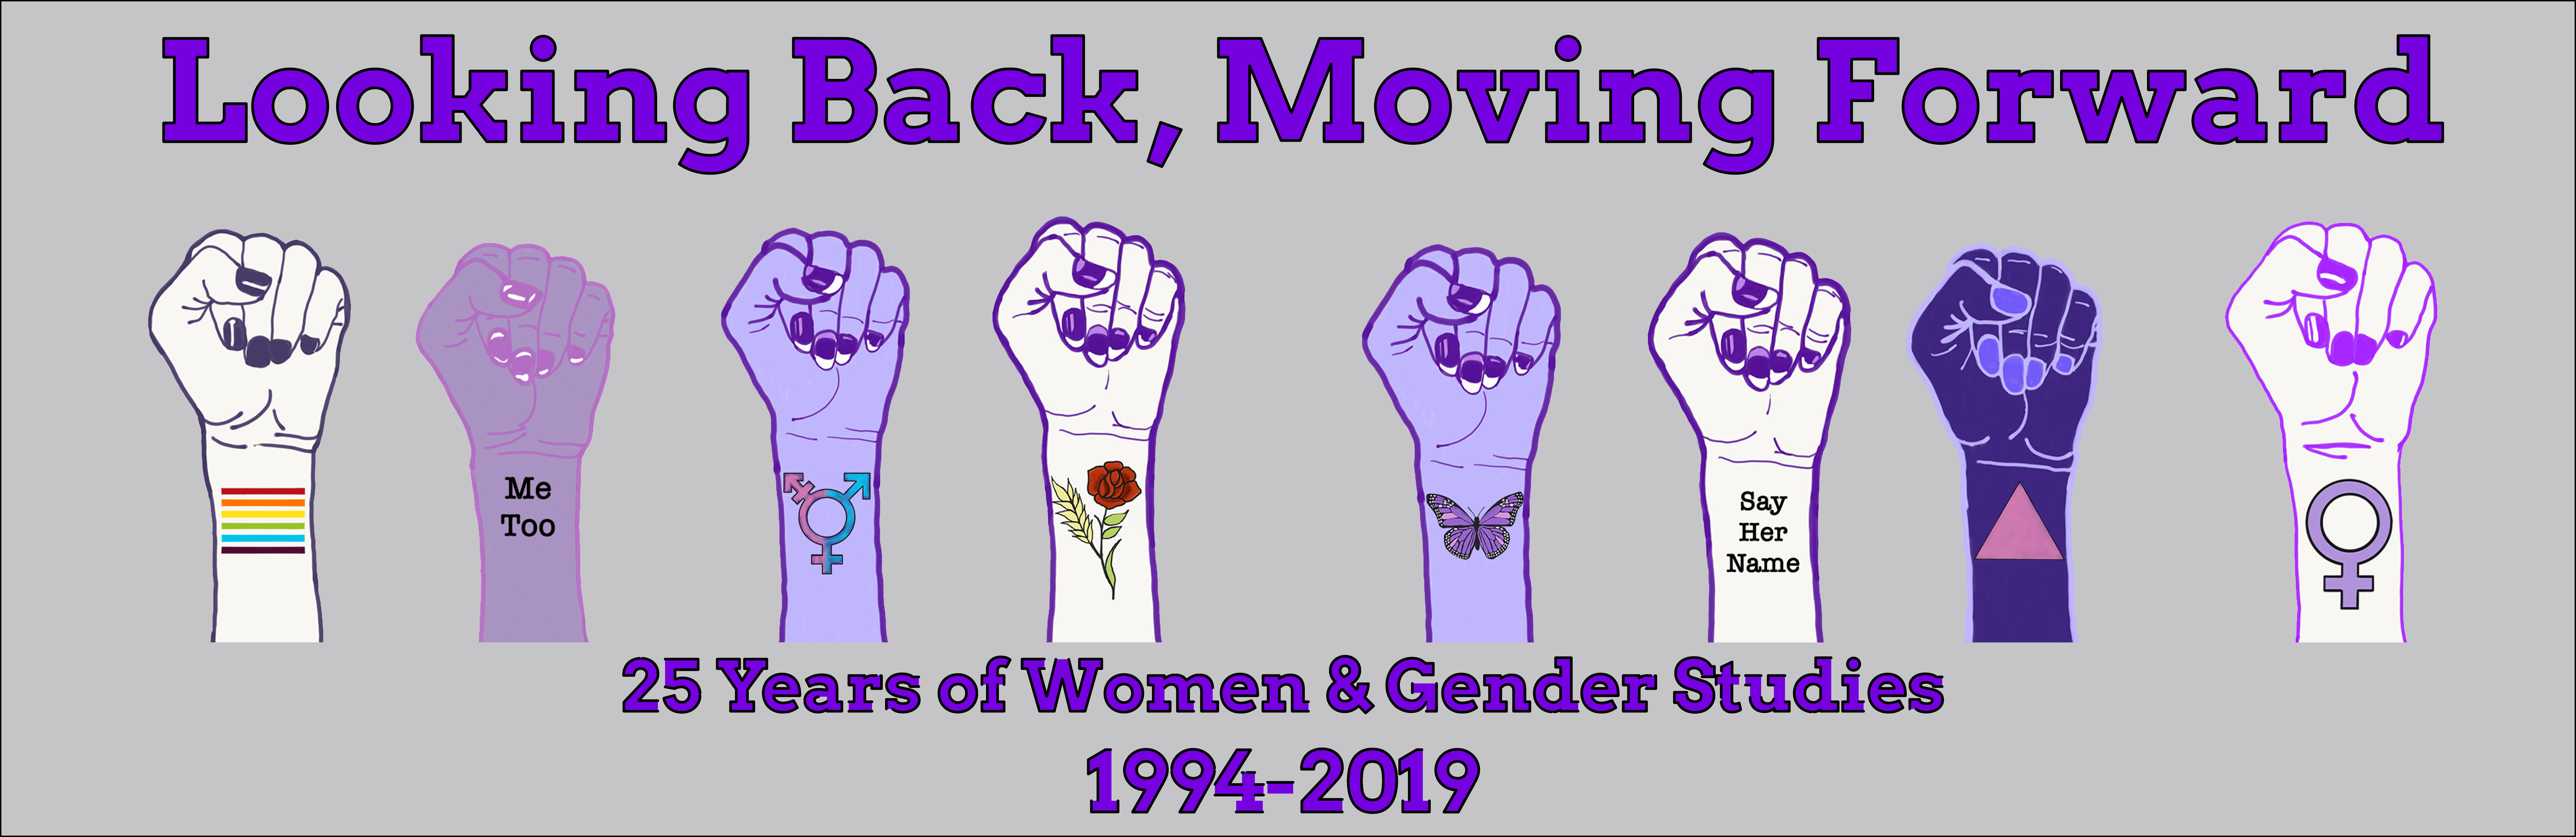 Looking back, moving forward. 25 years of Women & Gender Studies. 1994-2019.